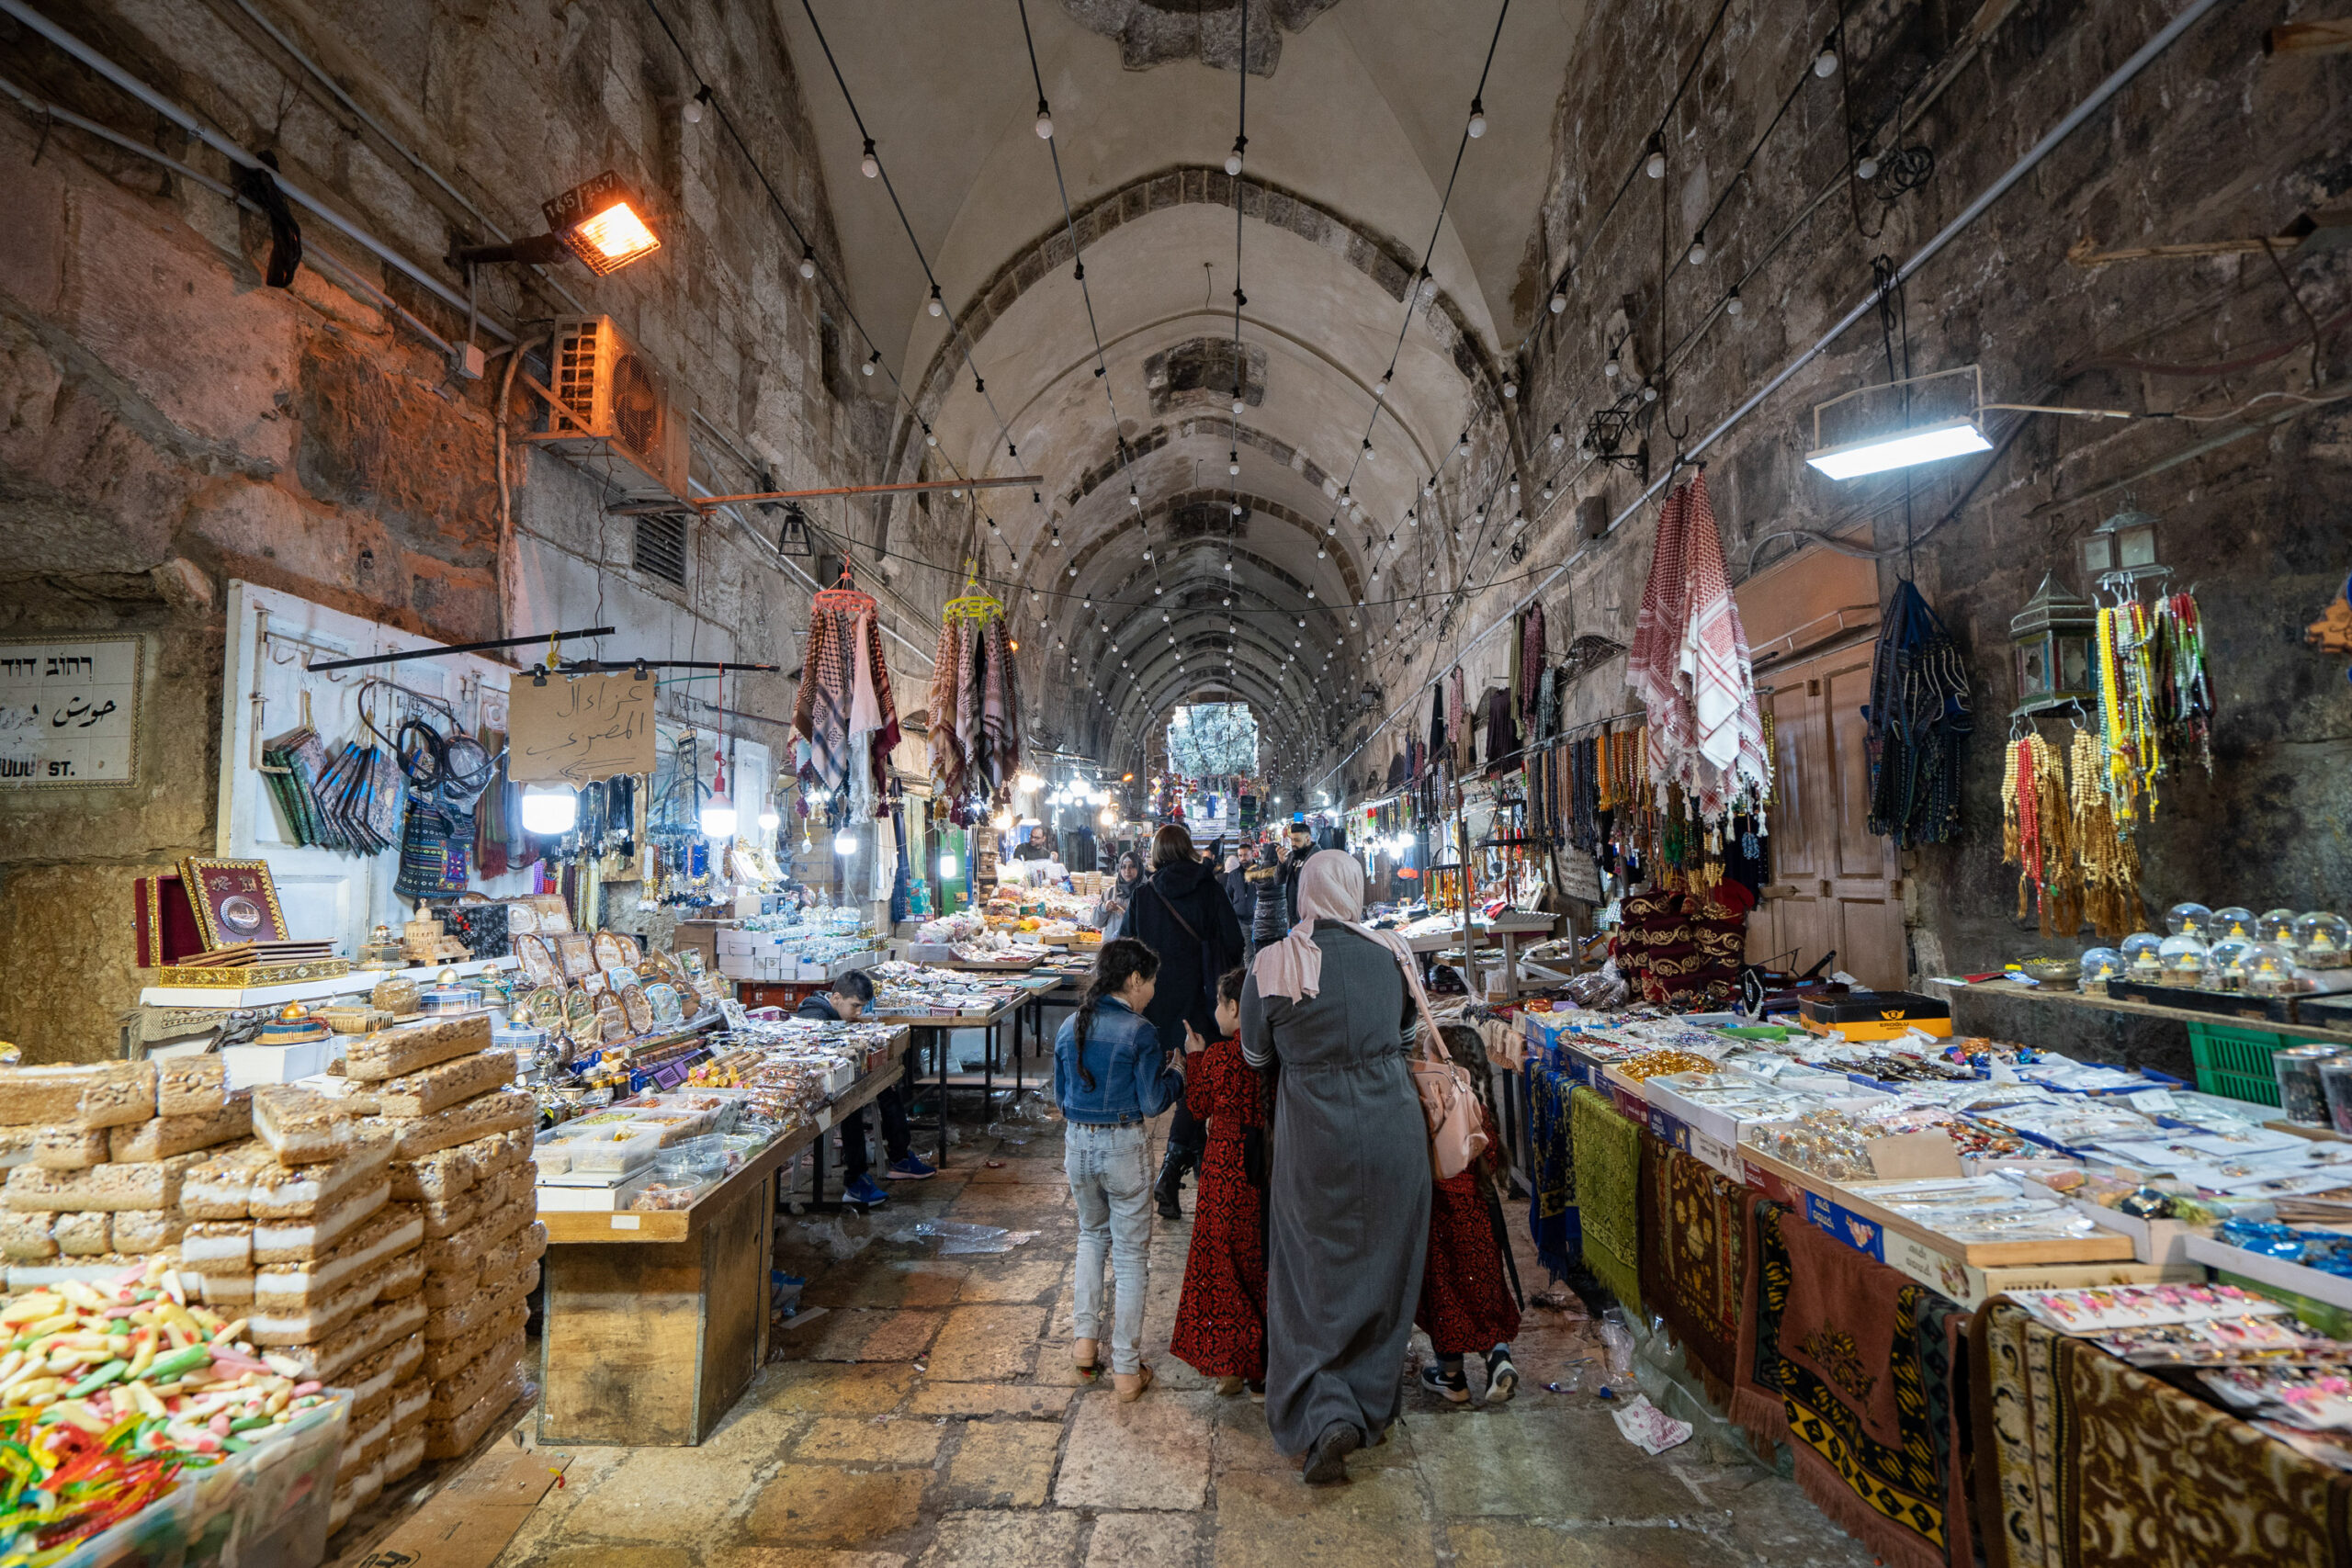 JERUSALEM – STREET SCENE IN THE OLD CITY